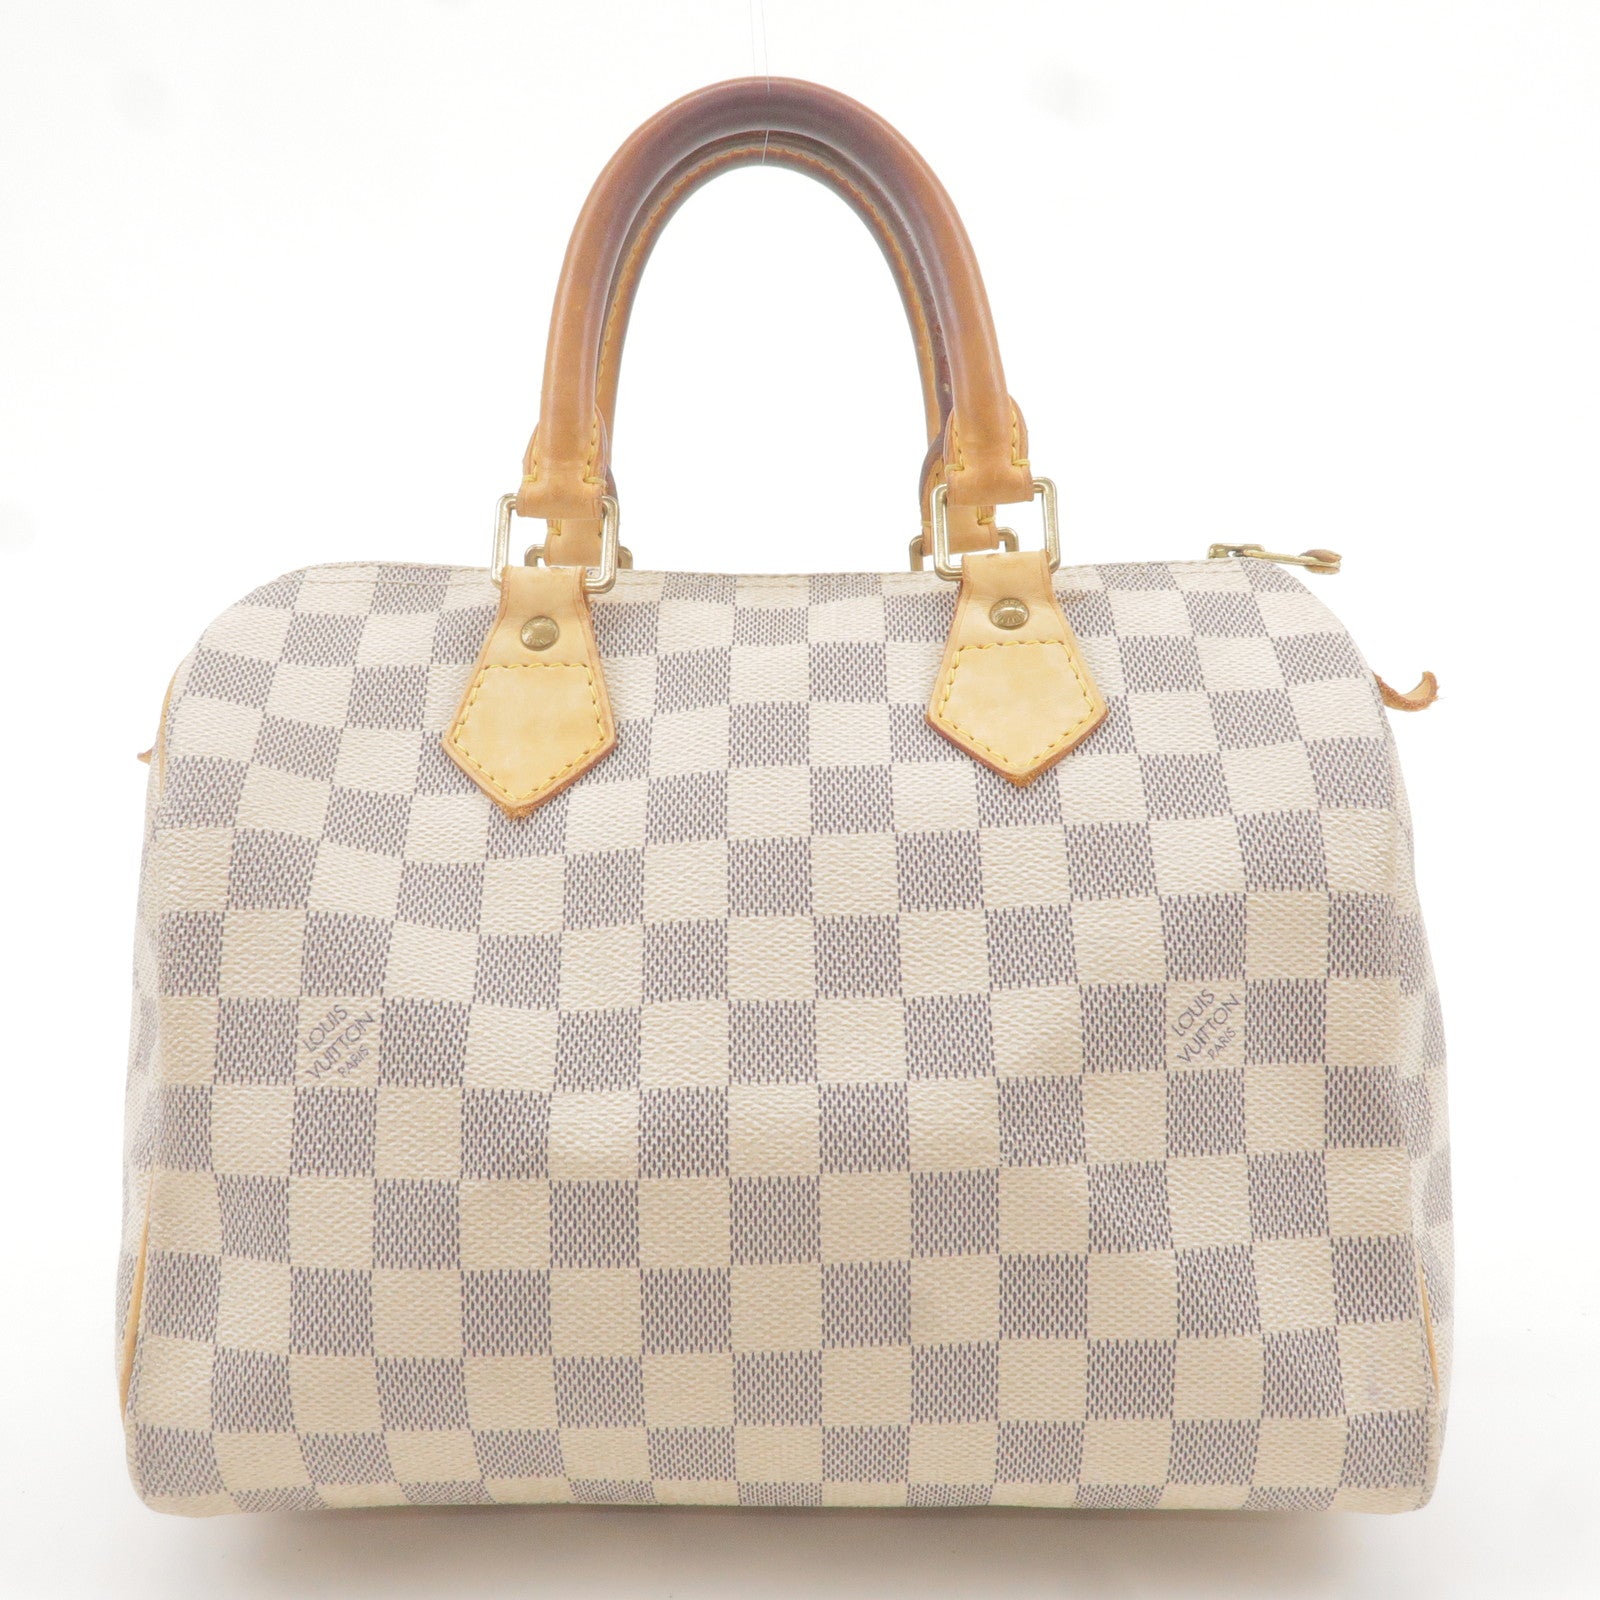 Black Louis Vuitton Epi Saint Jacques PM Short Strap Handbag